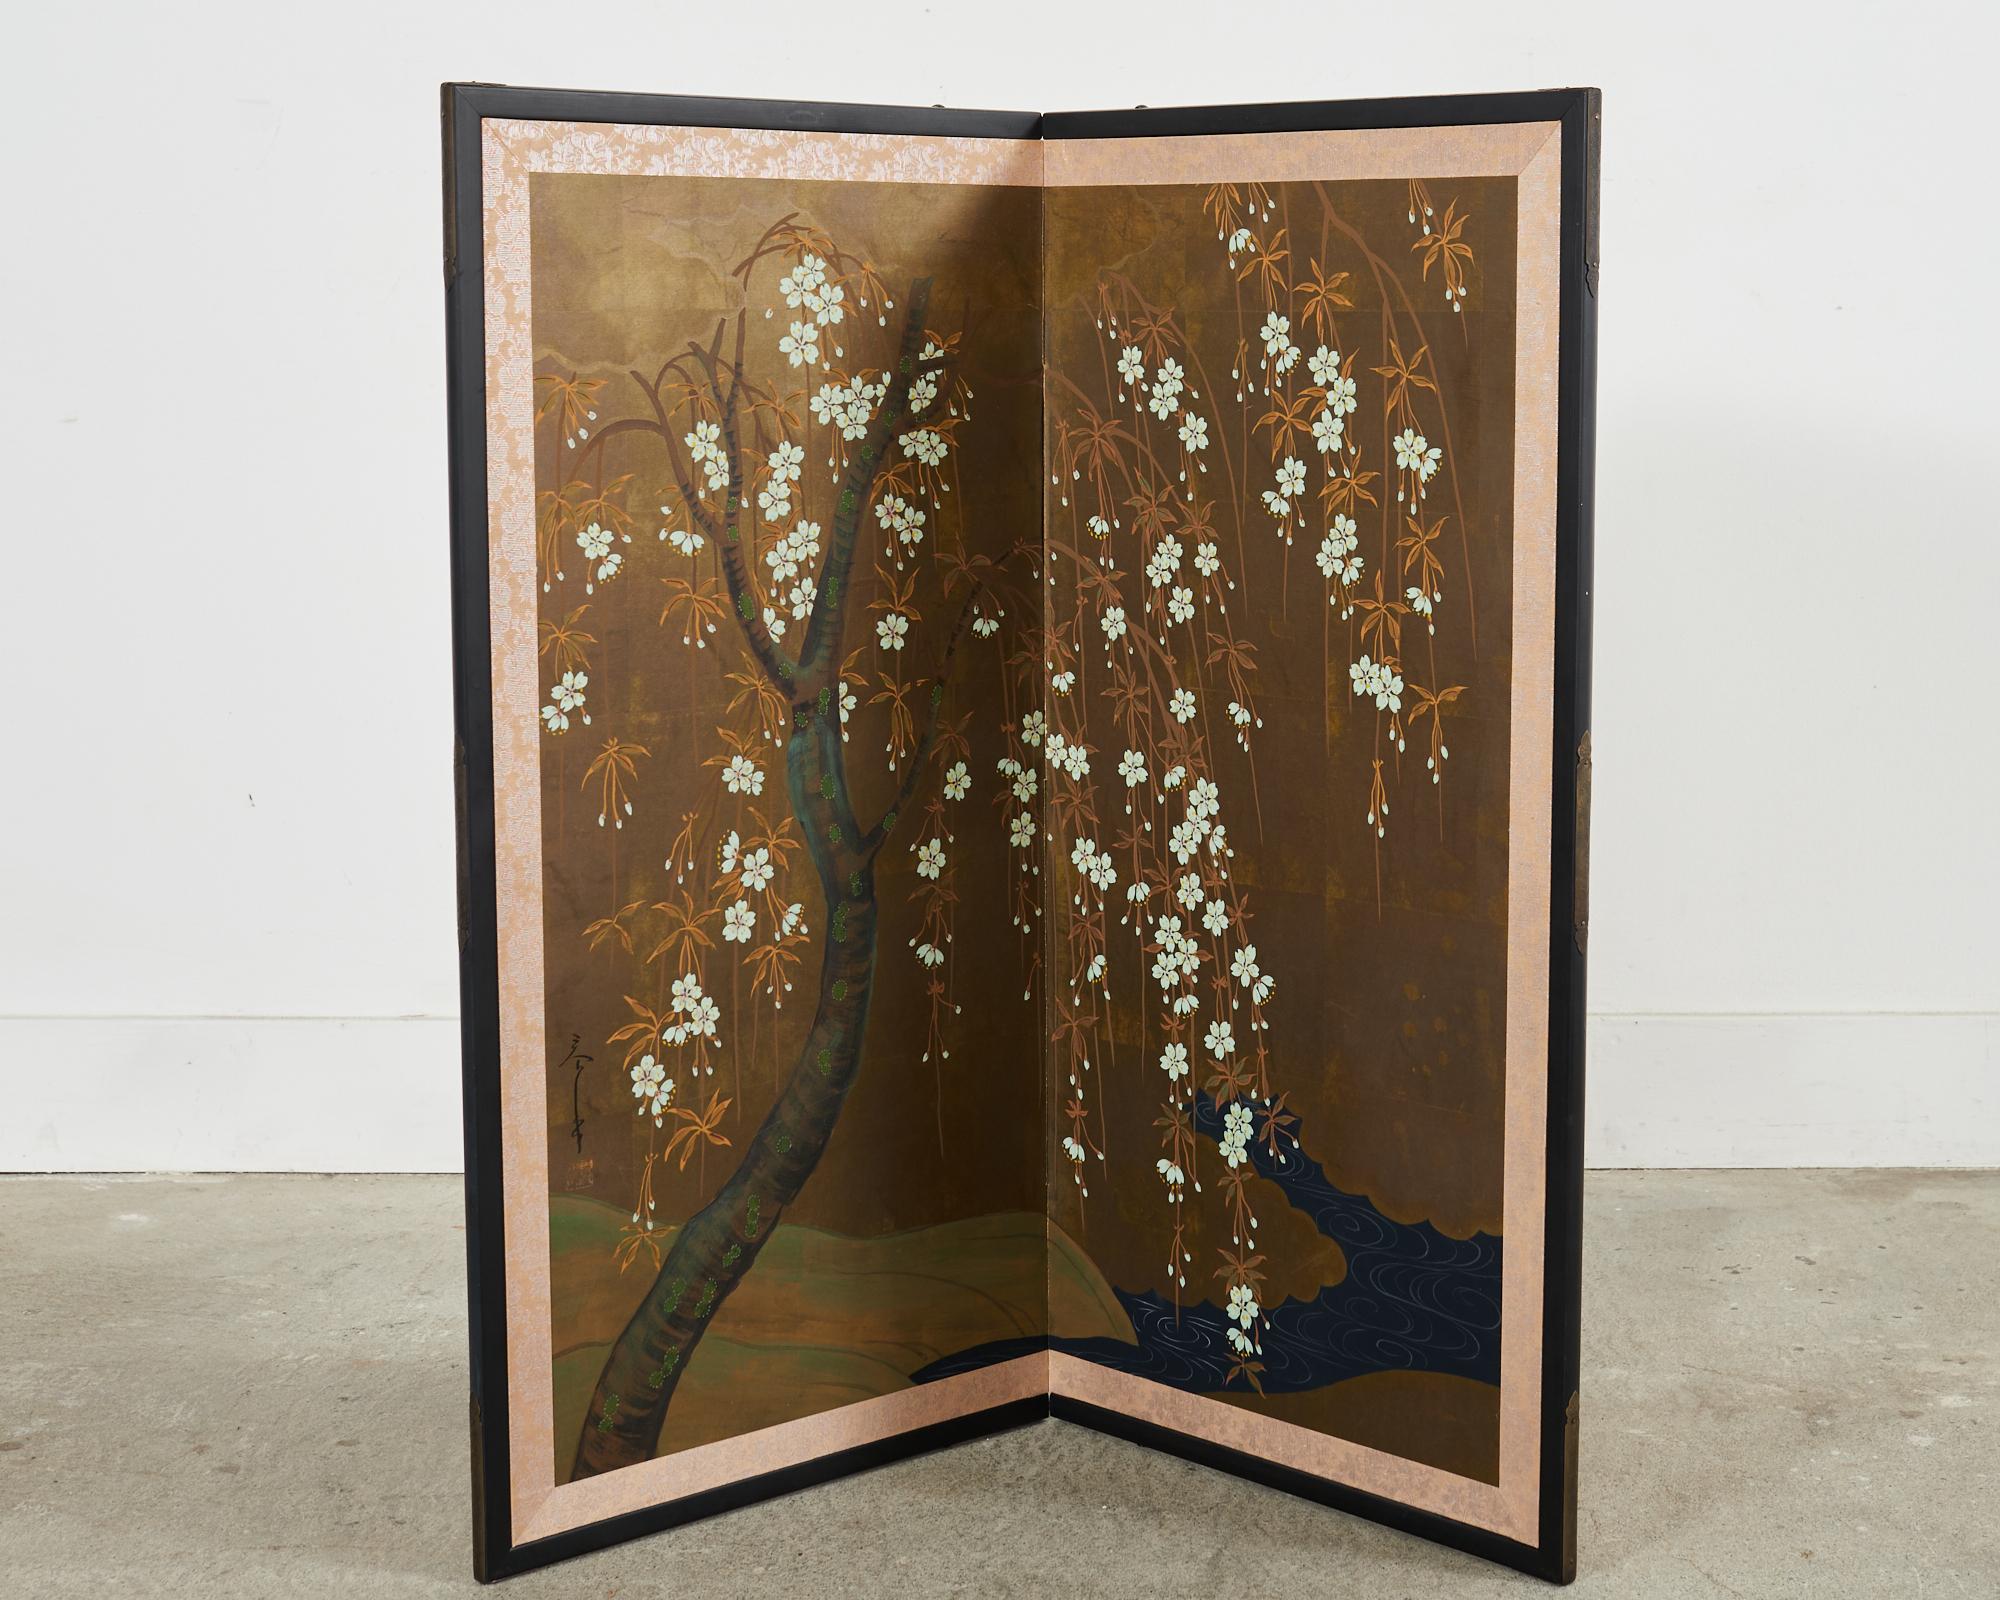 Magnifique paravent byobu japonais du 20e siècle, période Showa, à deux panneaux, représentant un délicat cerisier en fleurs (sakura) près d'une rivière ou d'un ruisseau sinueux. Peint à l'encre et aux pigments de couleur naturelle sur un fond carré